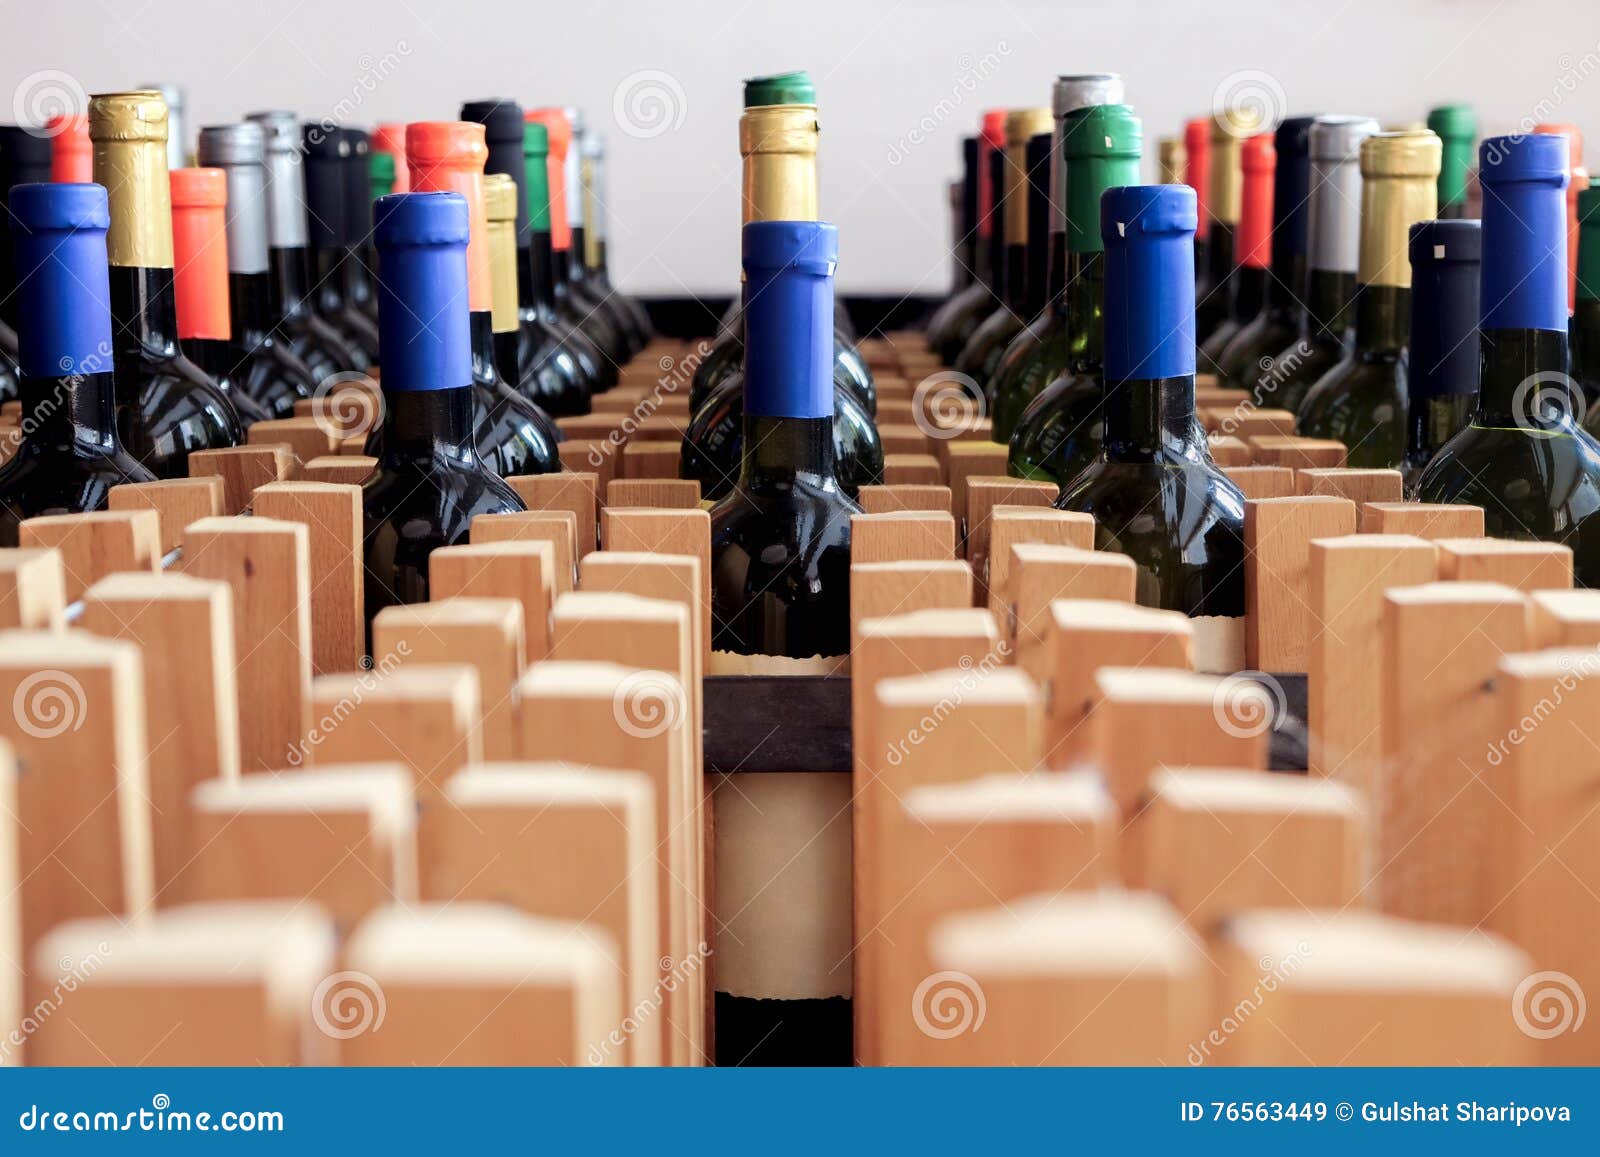 Gestell Von Flaschen Wein Mit Leerem Aufkleber Stockbild Bild Von Kennsatz Leerzeichen 76563449